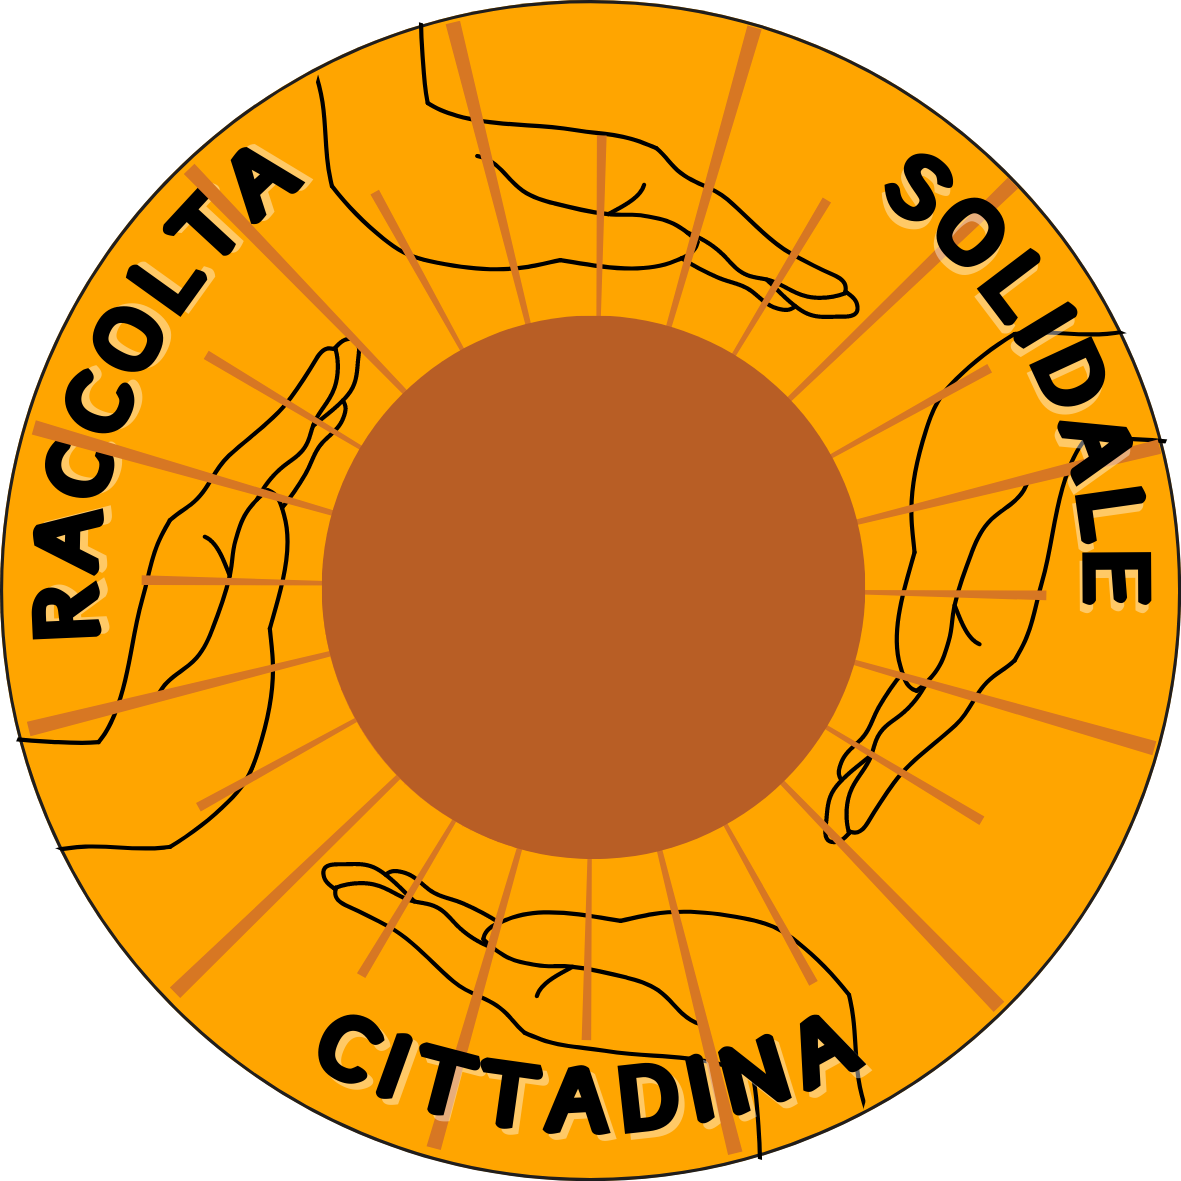 Raccolta Solidale Cittadina